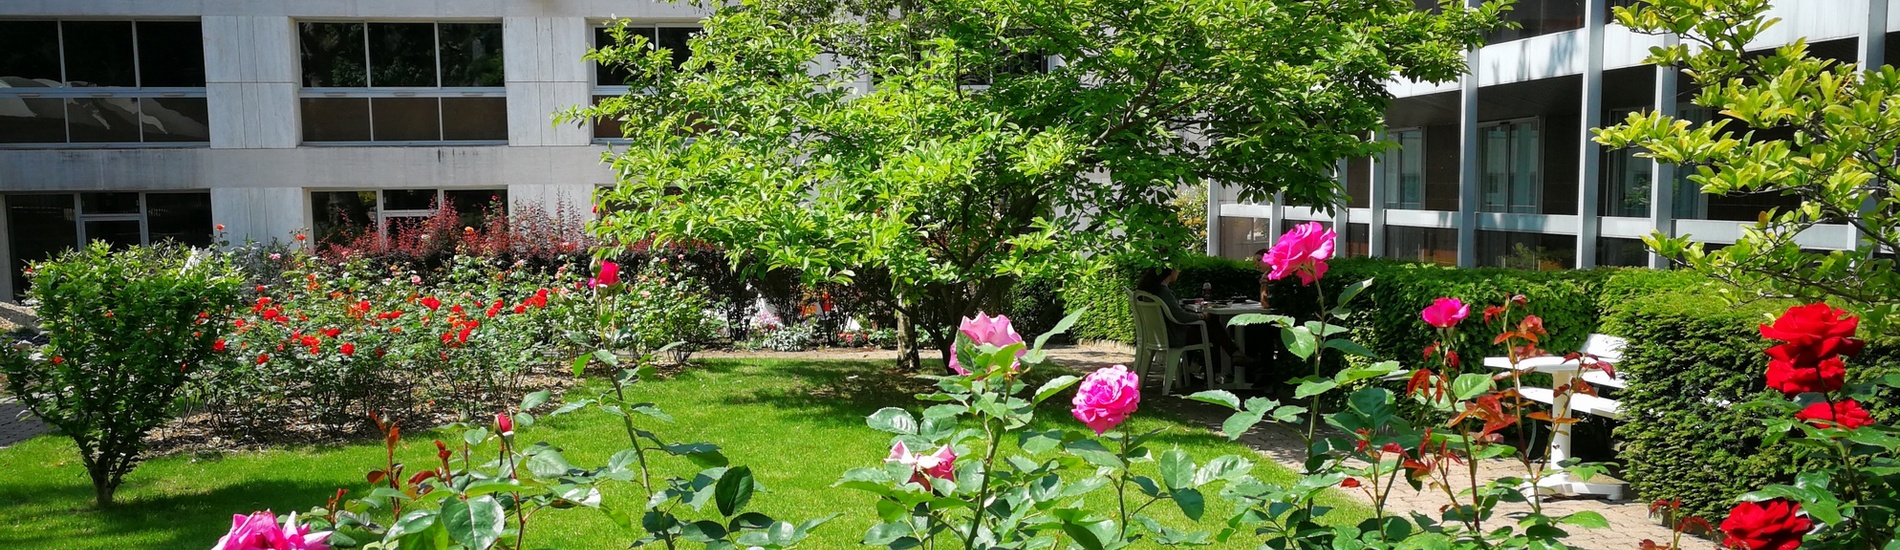 A private garden